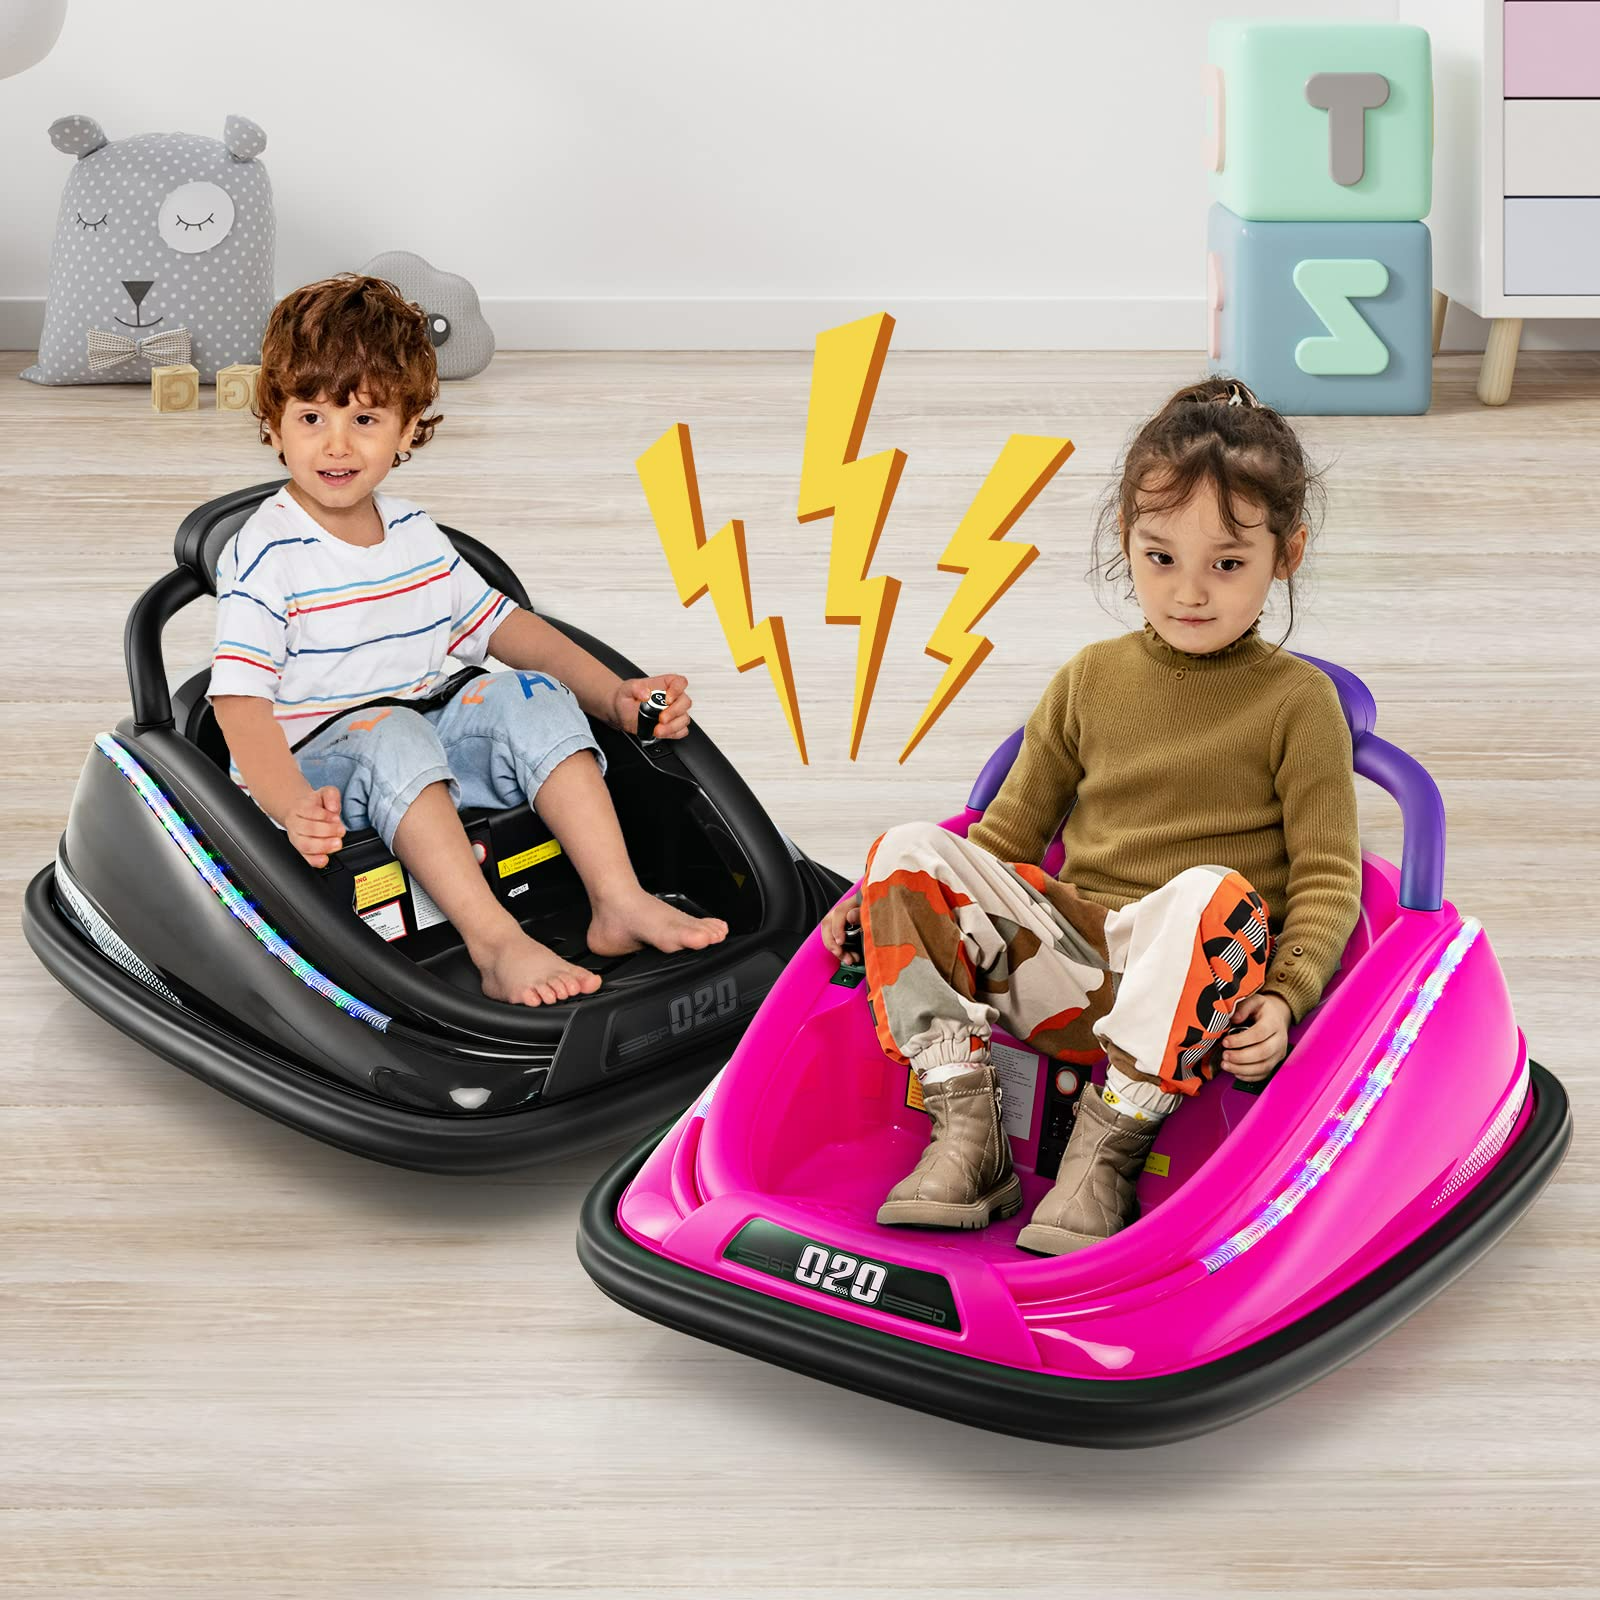 Infans Per Car For Toddlers 12v